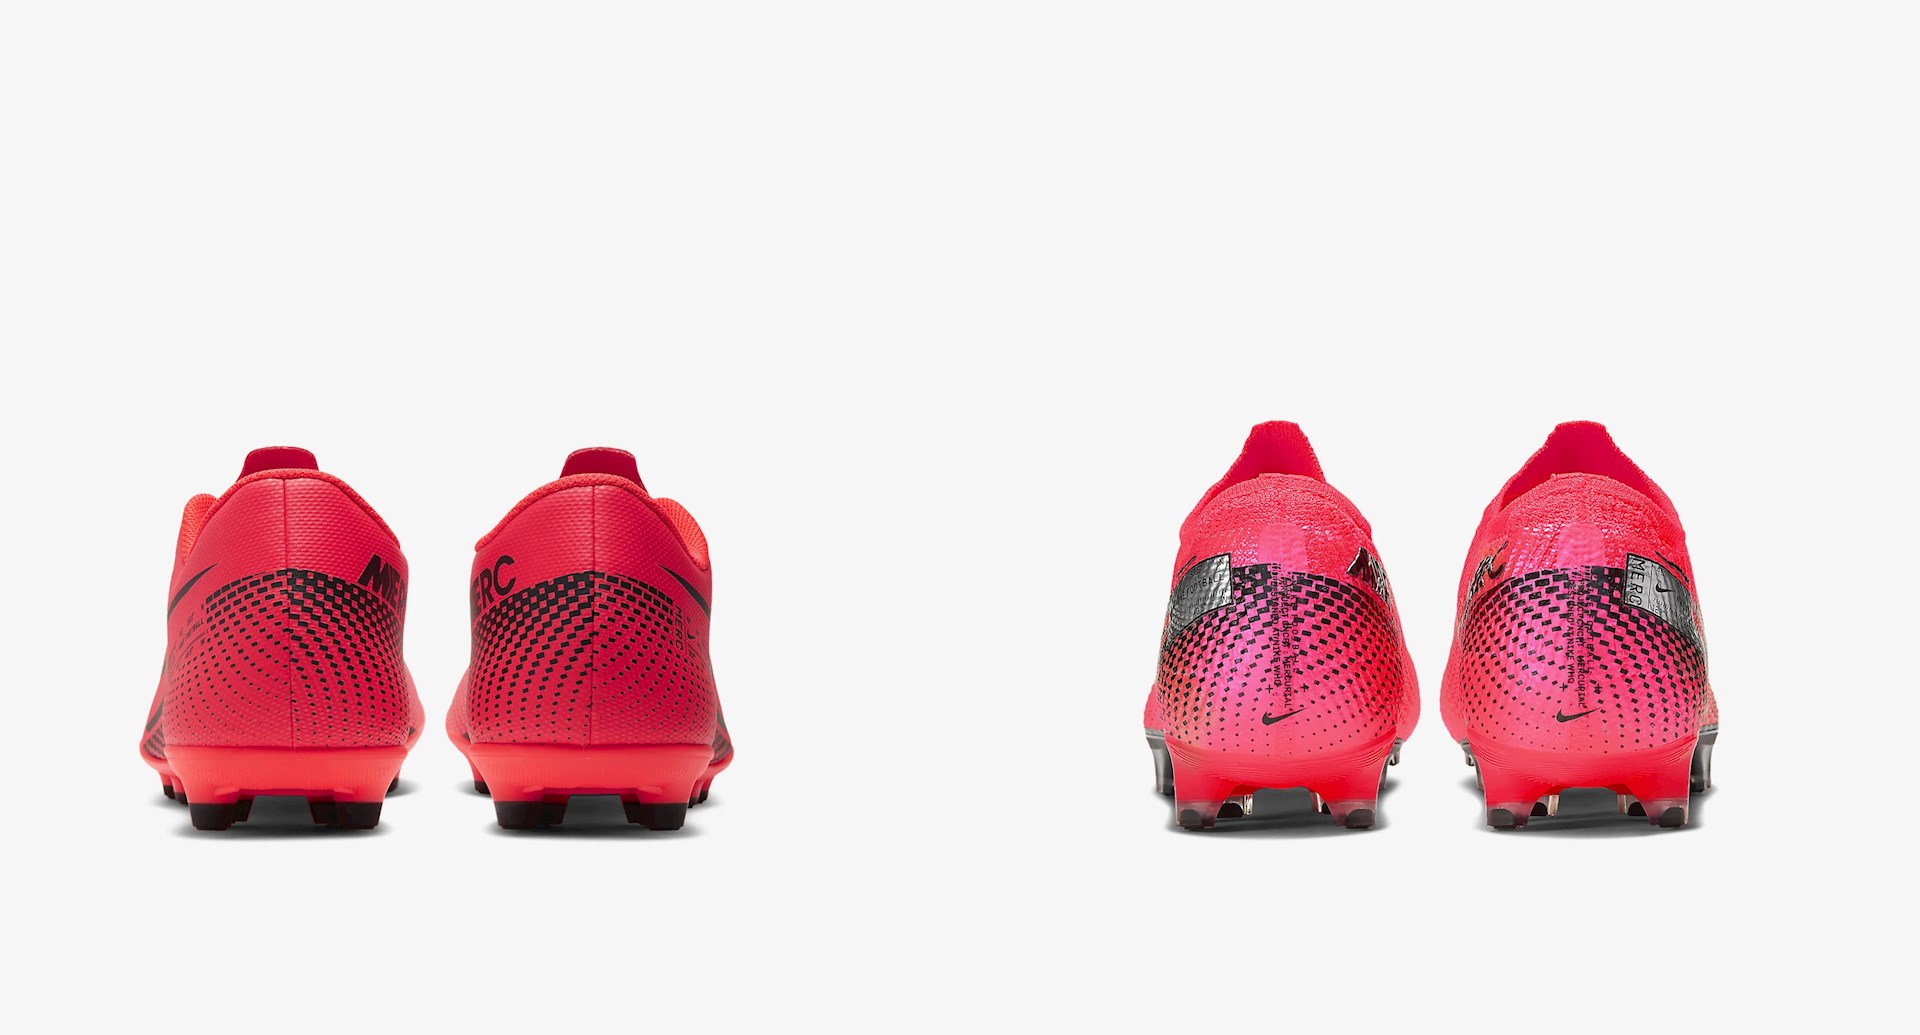 Goedkope Nike Mercurial voetbalschoenen - Voetbal-schoenen.eu